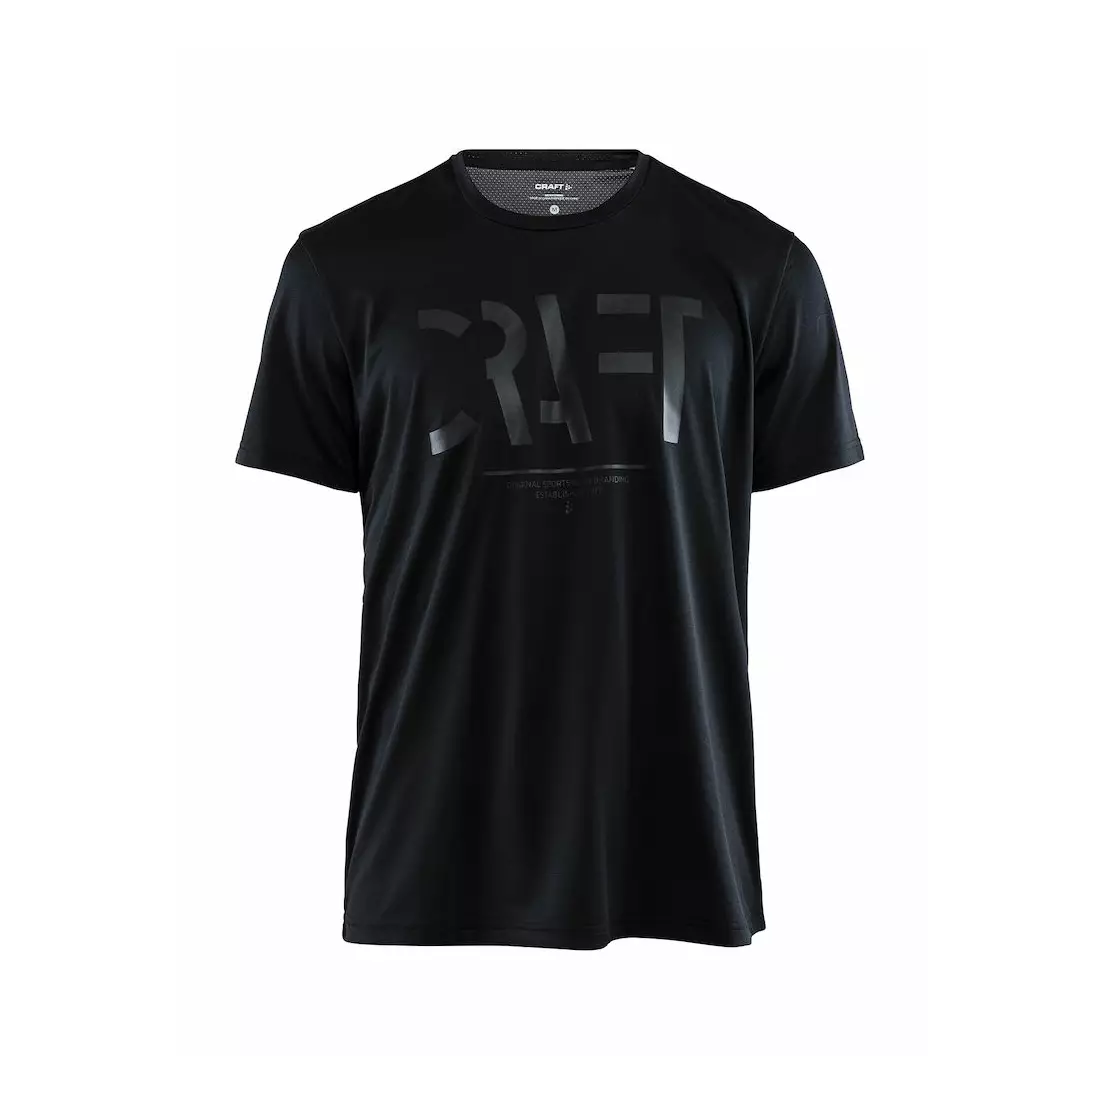 CRAFT EAZE MESH Herren T-Shirt für Sport / Laufen schwarz 1907018-999000000